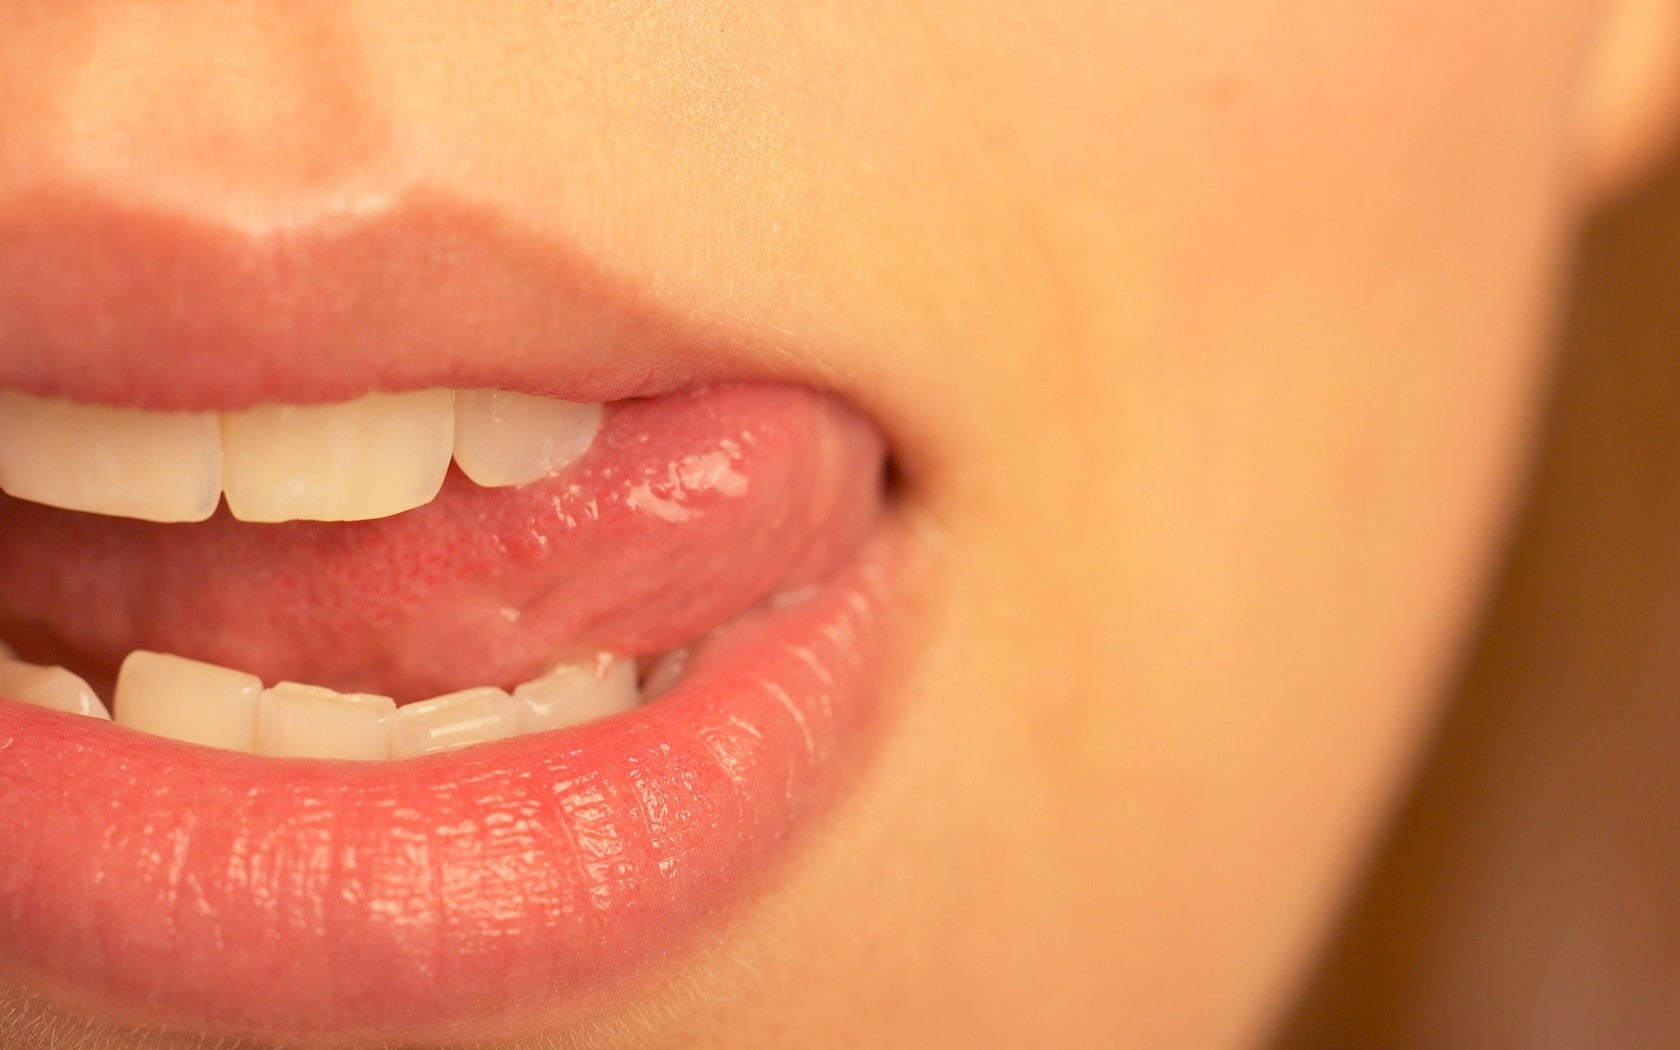 mouths, closeup, lips, face, women, tongues, human mouth, human lips